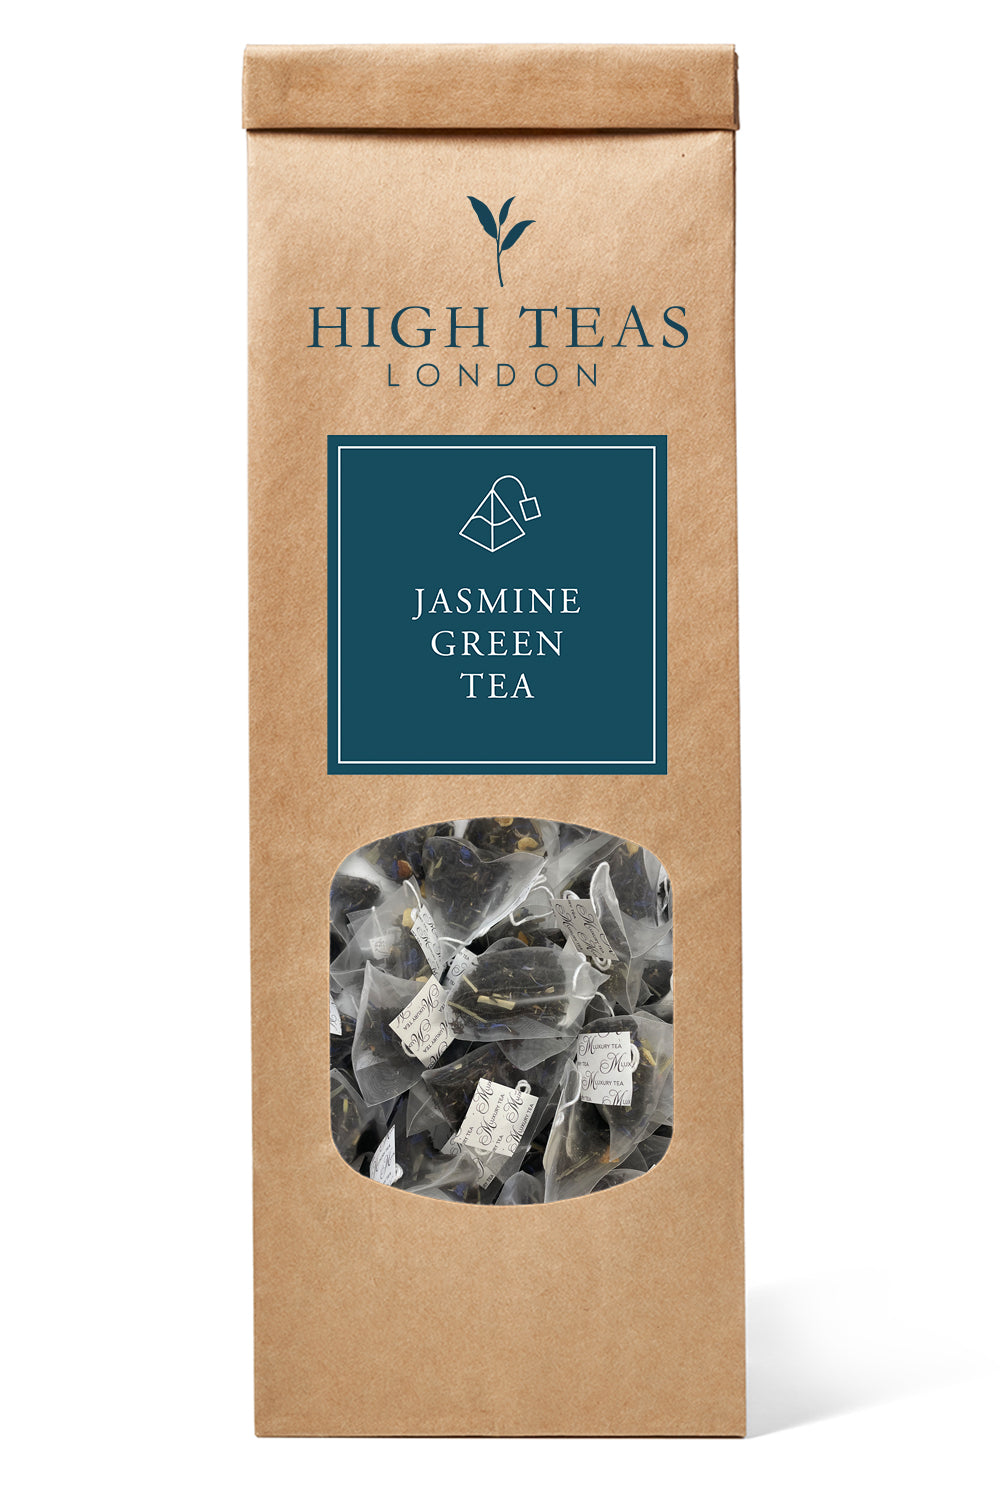 Jasmine Green Tea (Pyramid Bags)-20 pyramids-Loose Leaf Tea-High Teas